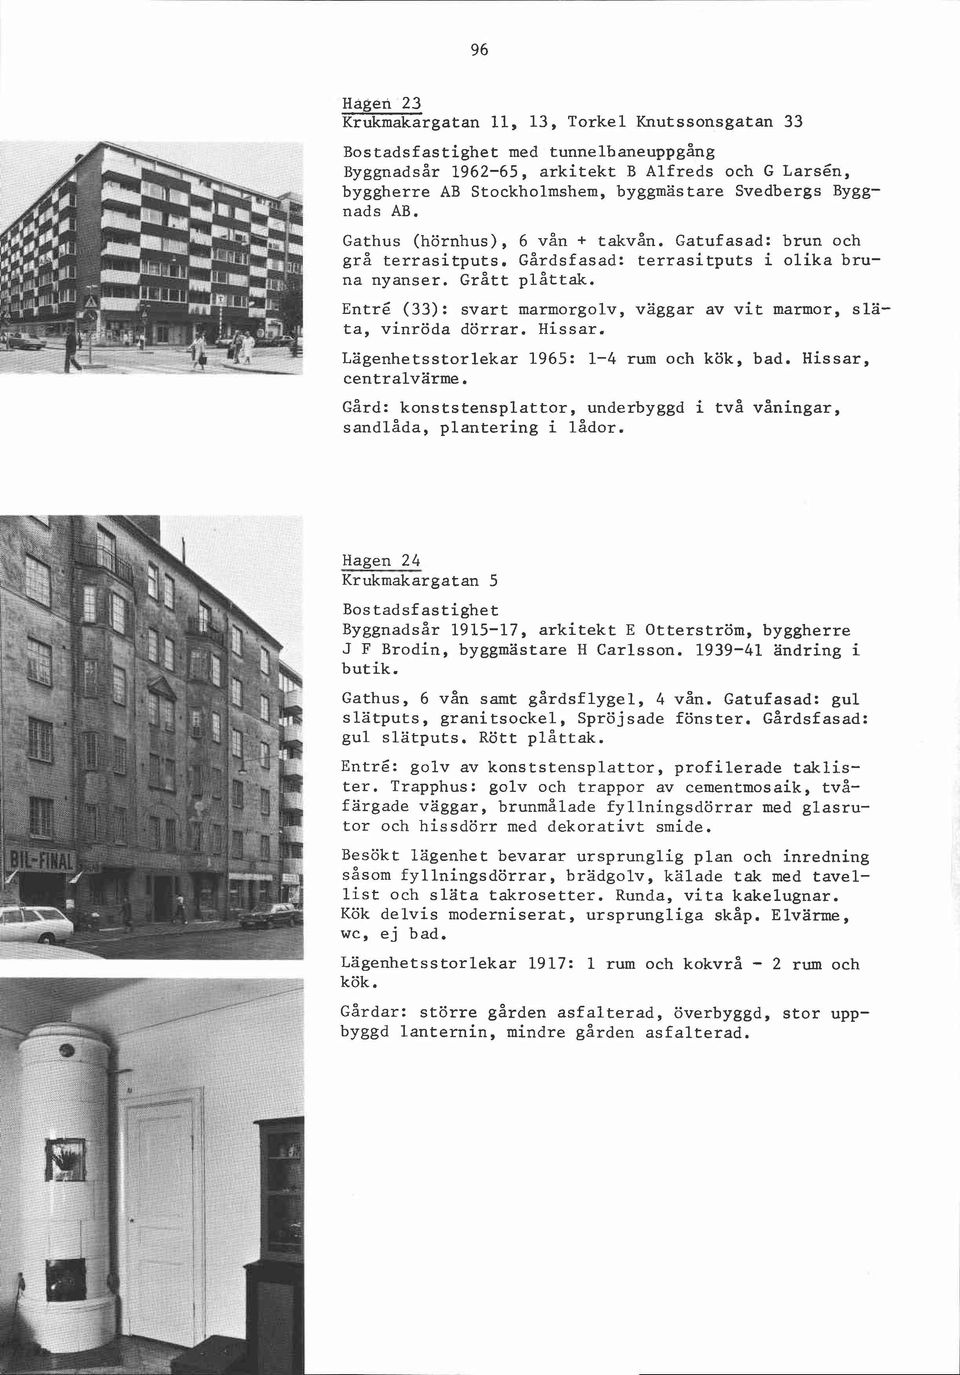 Entré (33): svart marmorgolv, väggar av vit marmor, släta, vinröda dörrar. Hissar. Lägenhetsstorlekar 1965: 1-4 rum och kök, bad. Hissar, centralvärme.